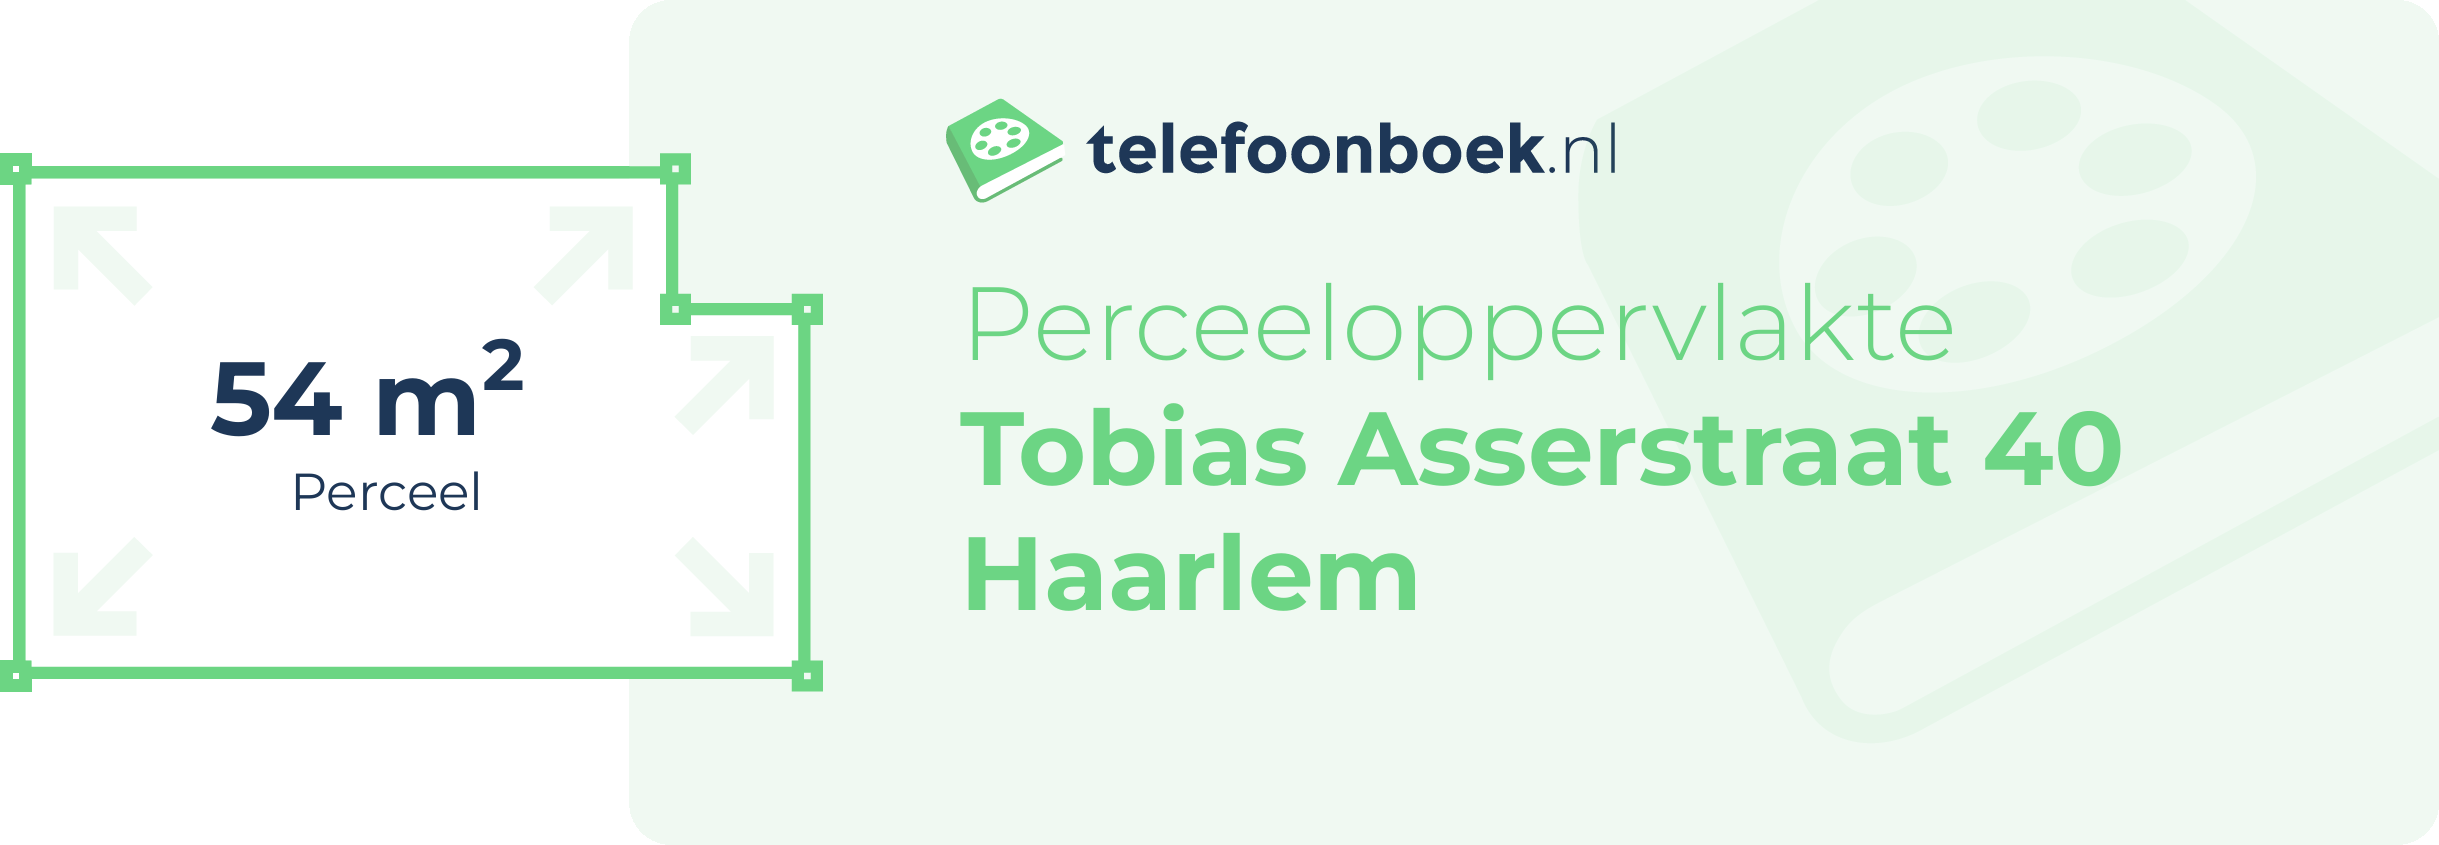 Perceeloppervlakte Tobias Asserstraat 40 Haarlem